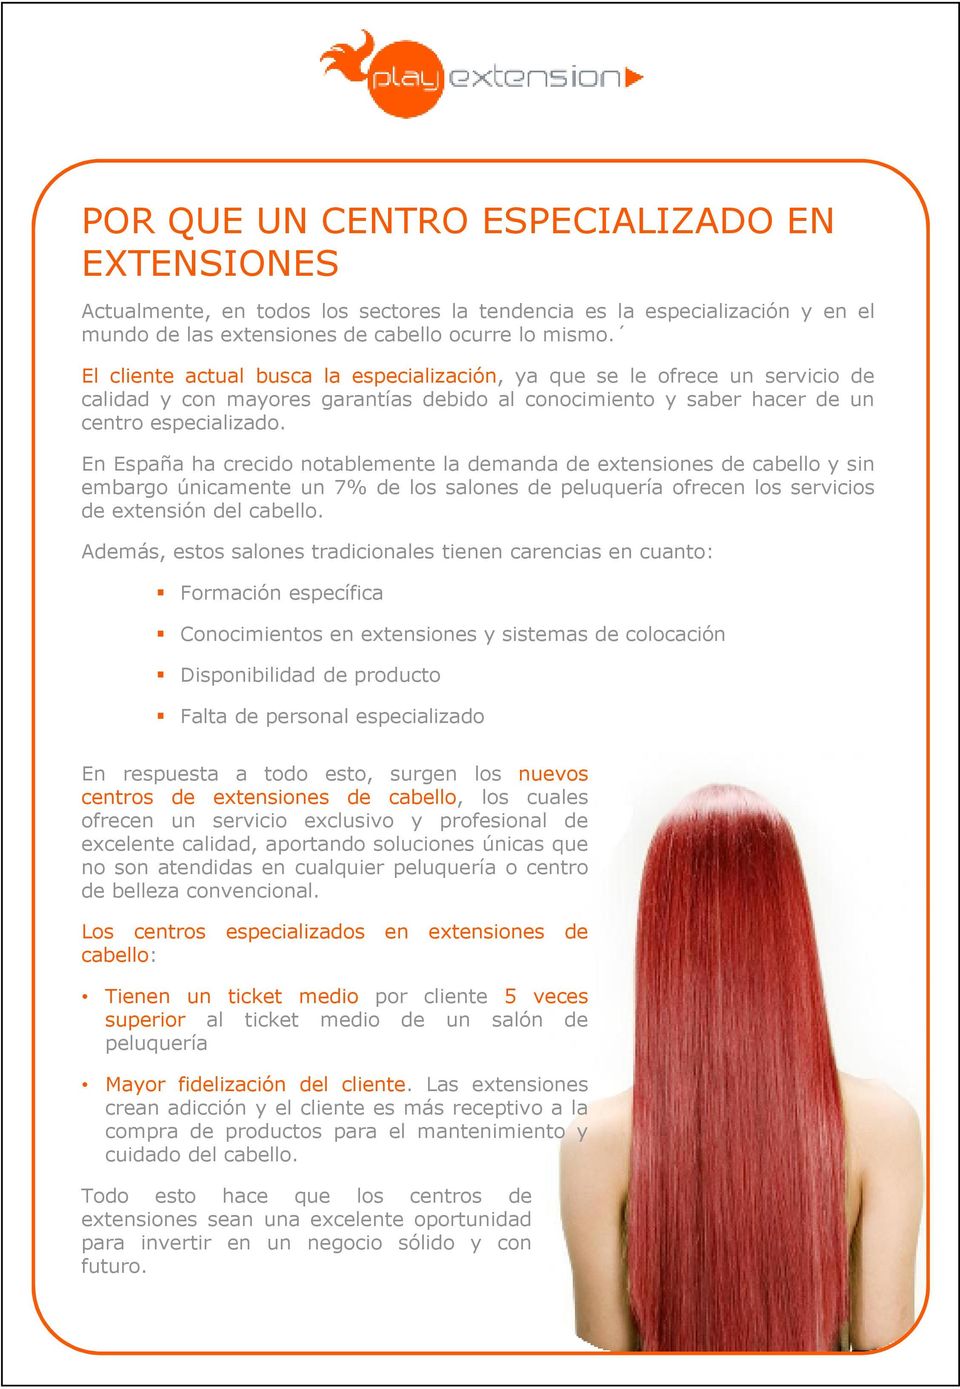 En España ha crecido notablemente la demanda de extensiones de cabello y sin embargo únicamente un 7% de los salones de peluquería ofrecen los servicios de extensión del cabello.